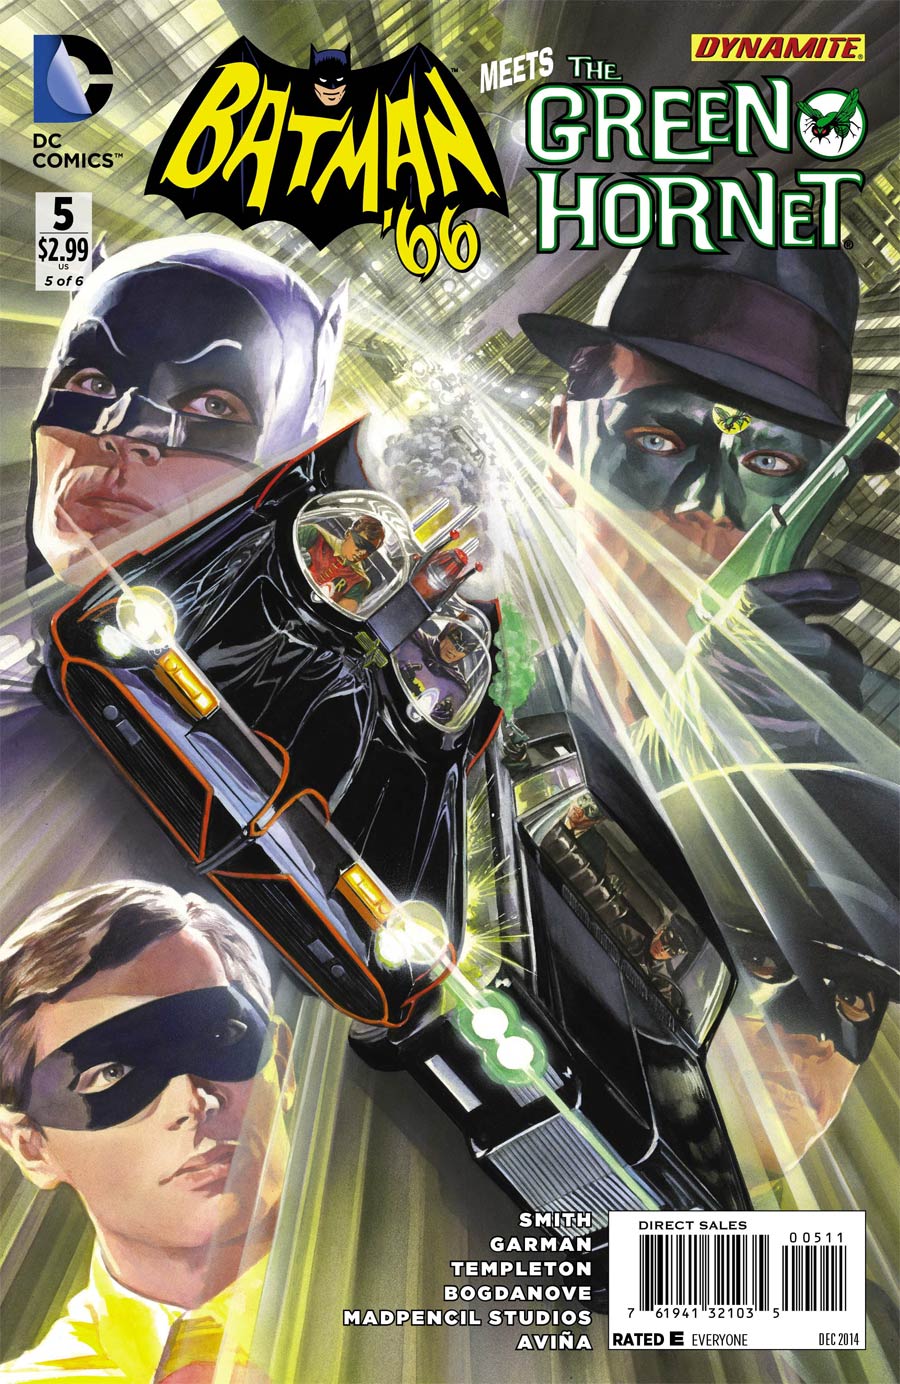 Batman 66 Meets Green Hornet #5